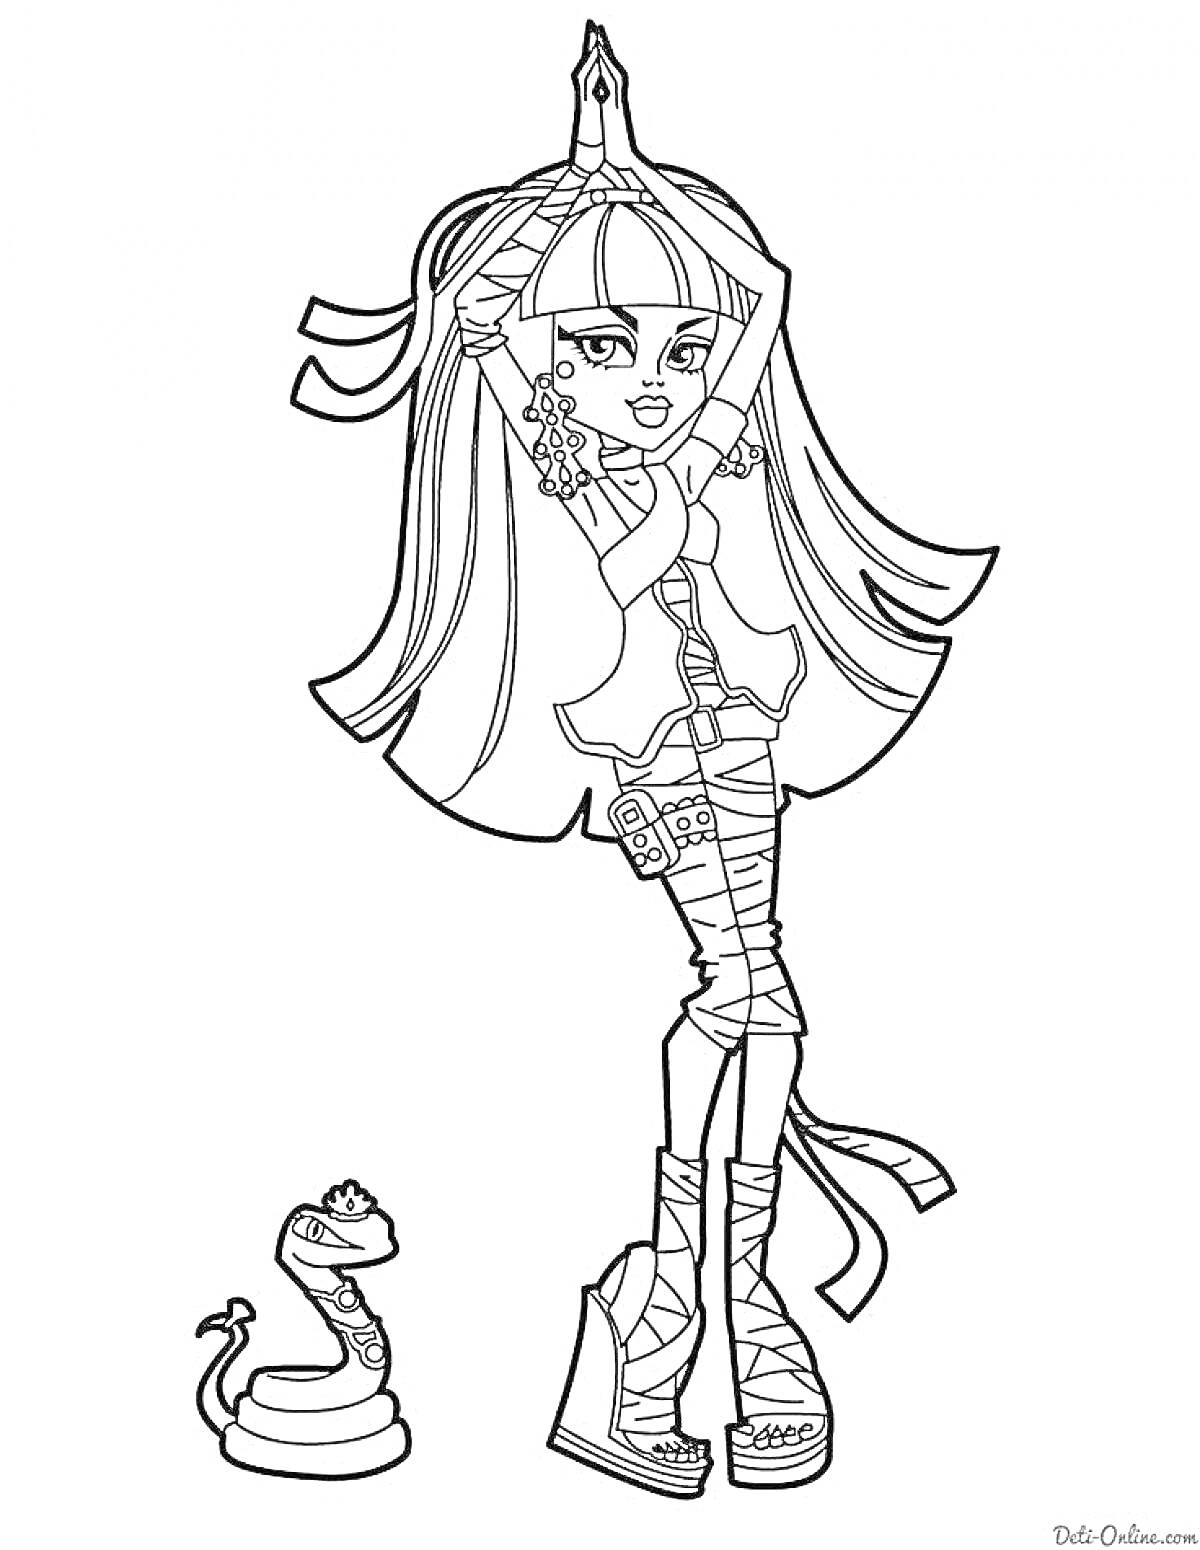 Раскраска Девочка монстр в бинтах с аксессуарами и змея